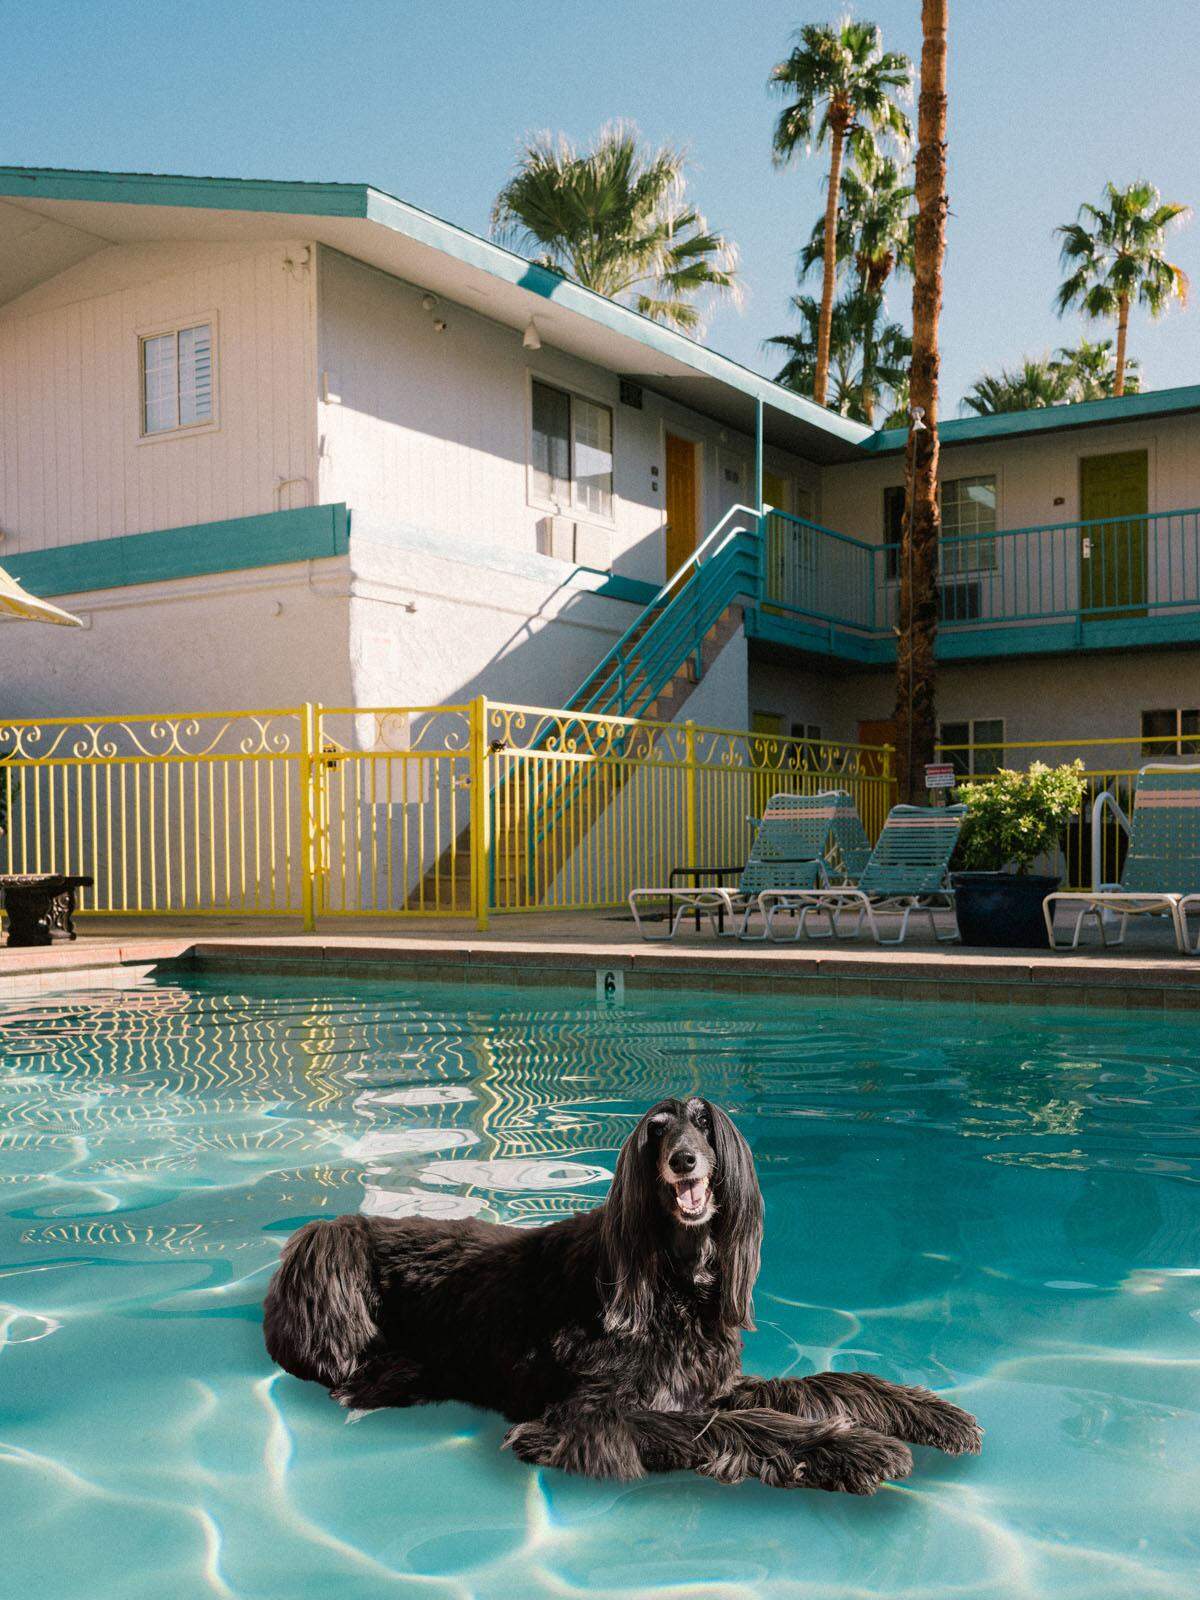 Das Jahr 2020 steht bei ihm nun also im Zeichen des gut frisierten Hundes. Hineinmontiert hat er sie in verschiedene Pools von Palm Springs.